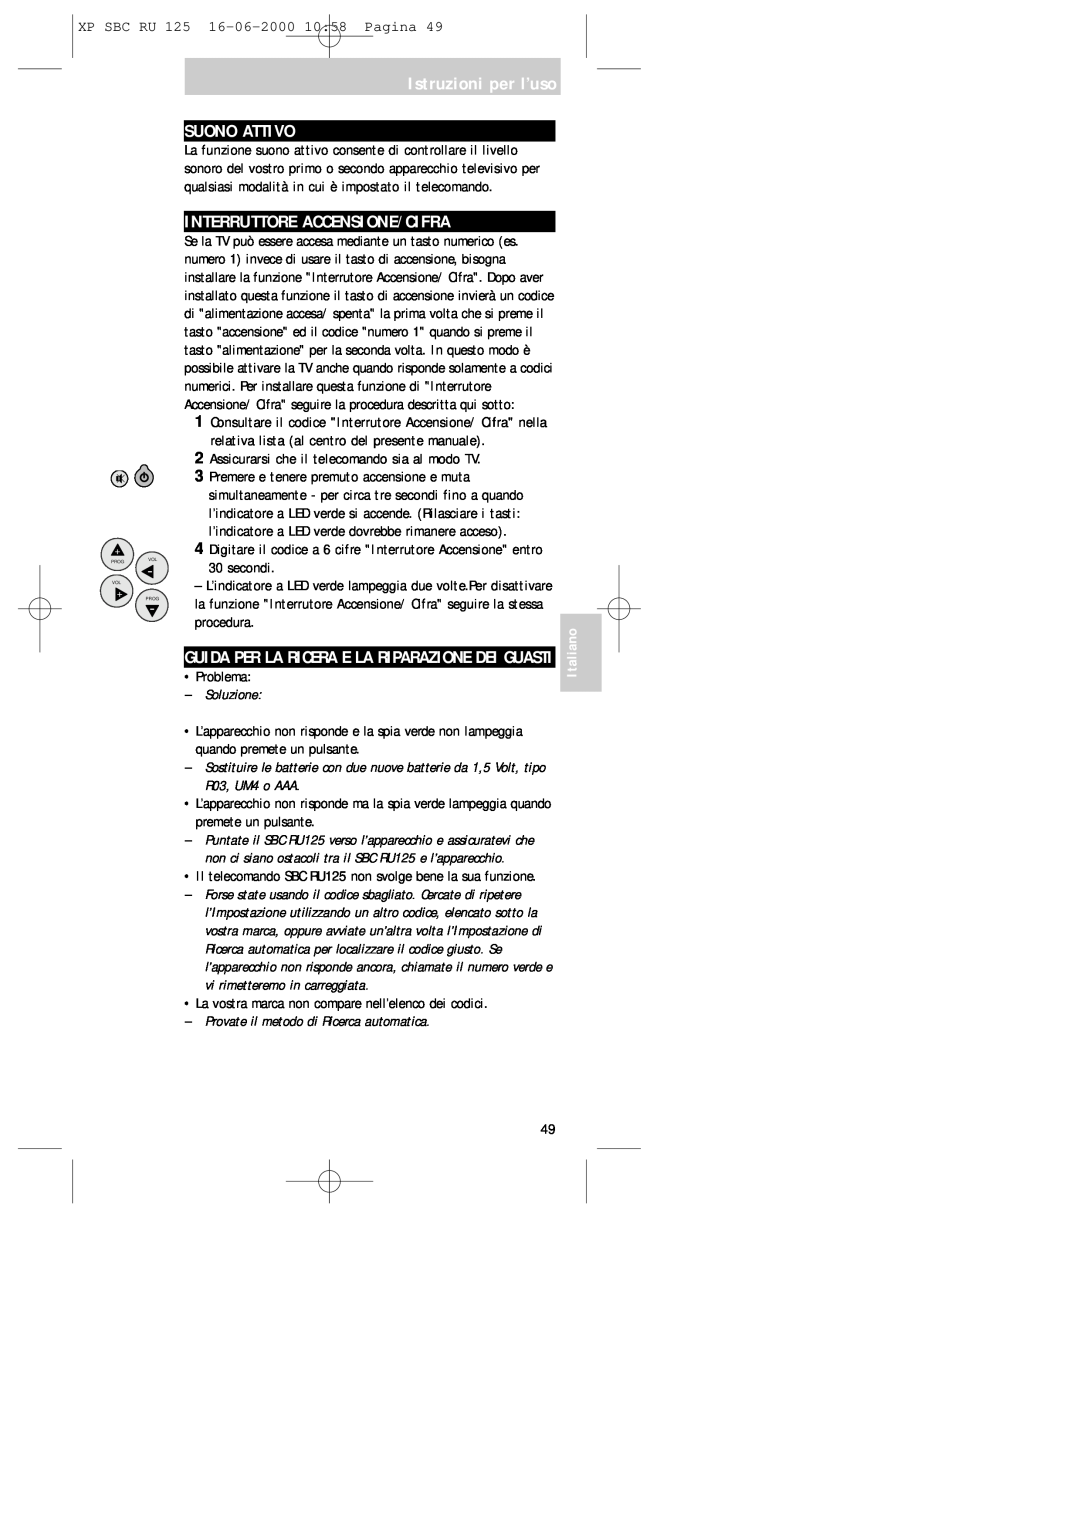 Philips RU125 manual Istruzioni per l’uso SUONO ATTIVO, Interruttore Accensione/Cifra, Italiano 